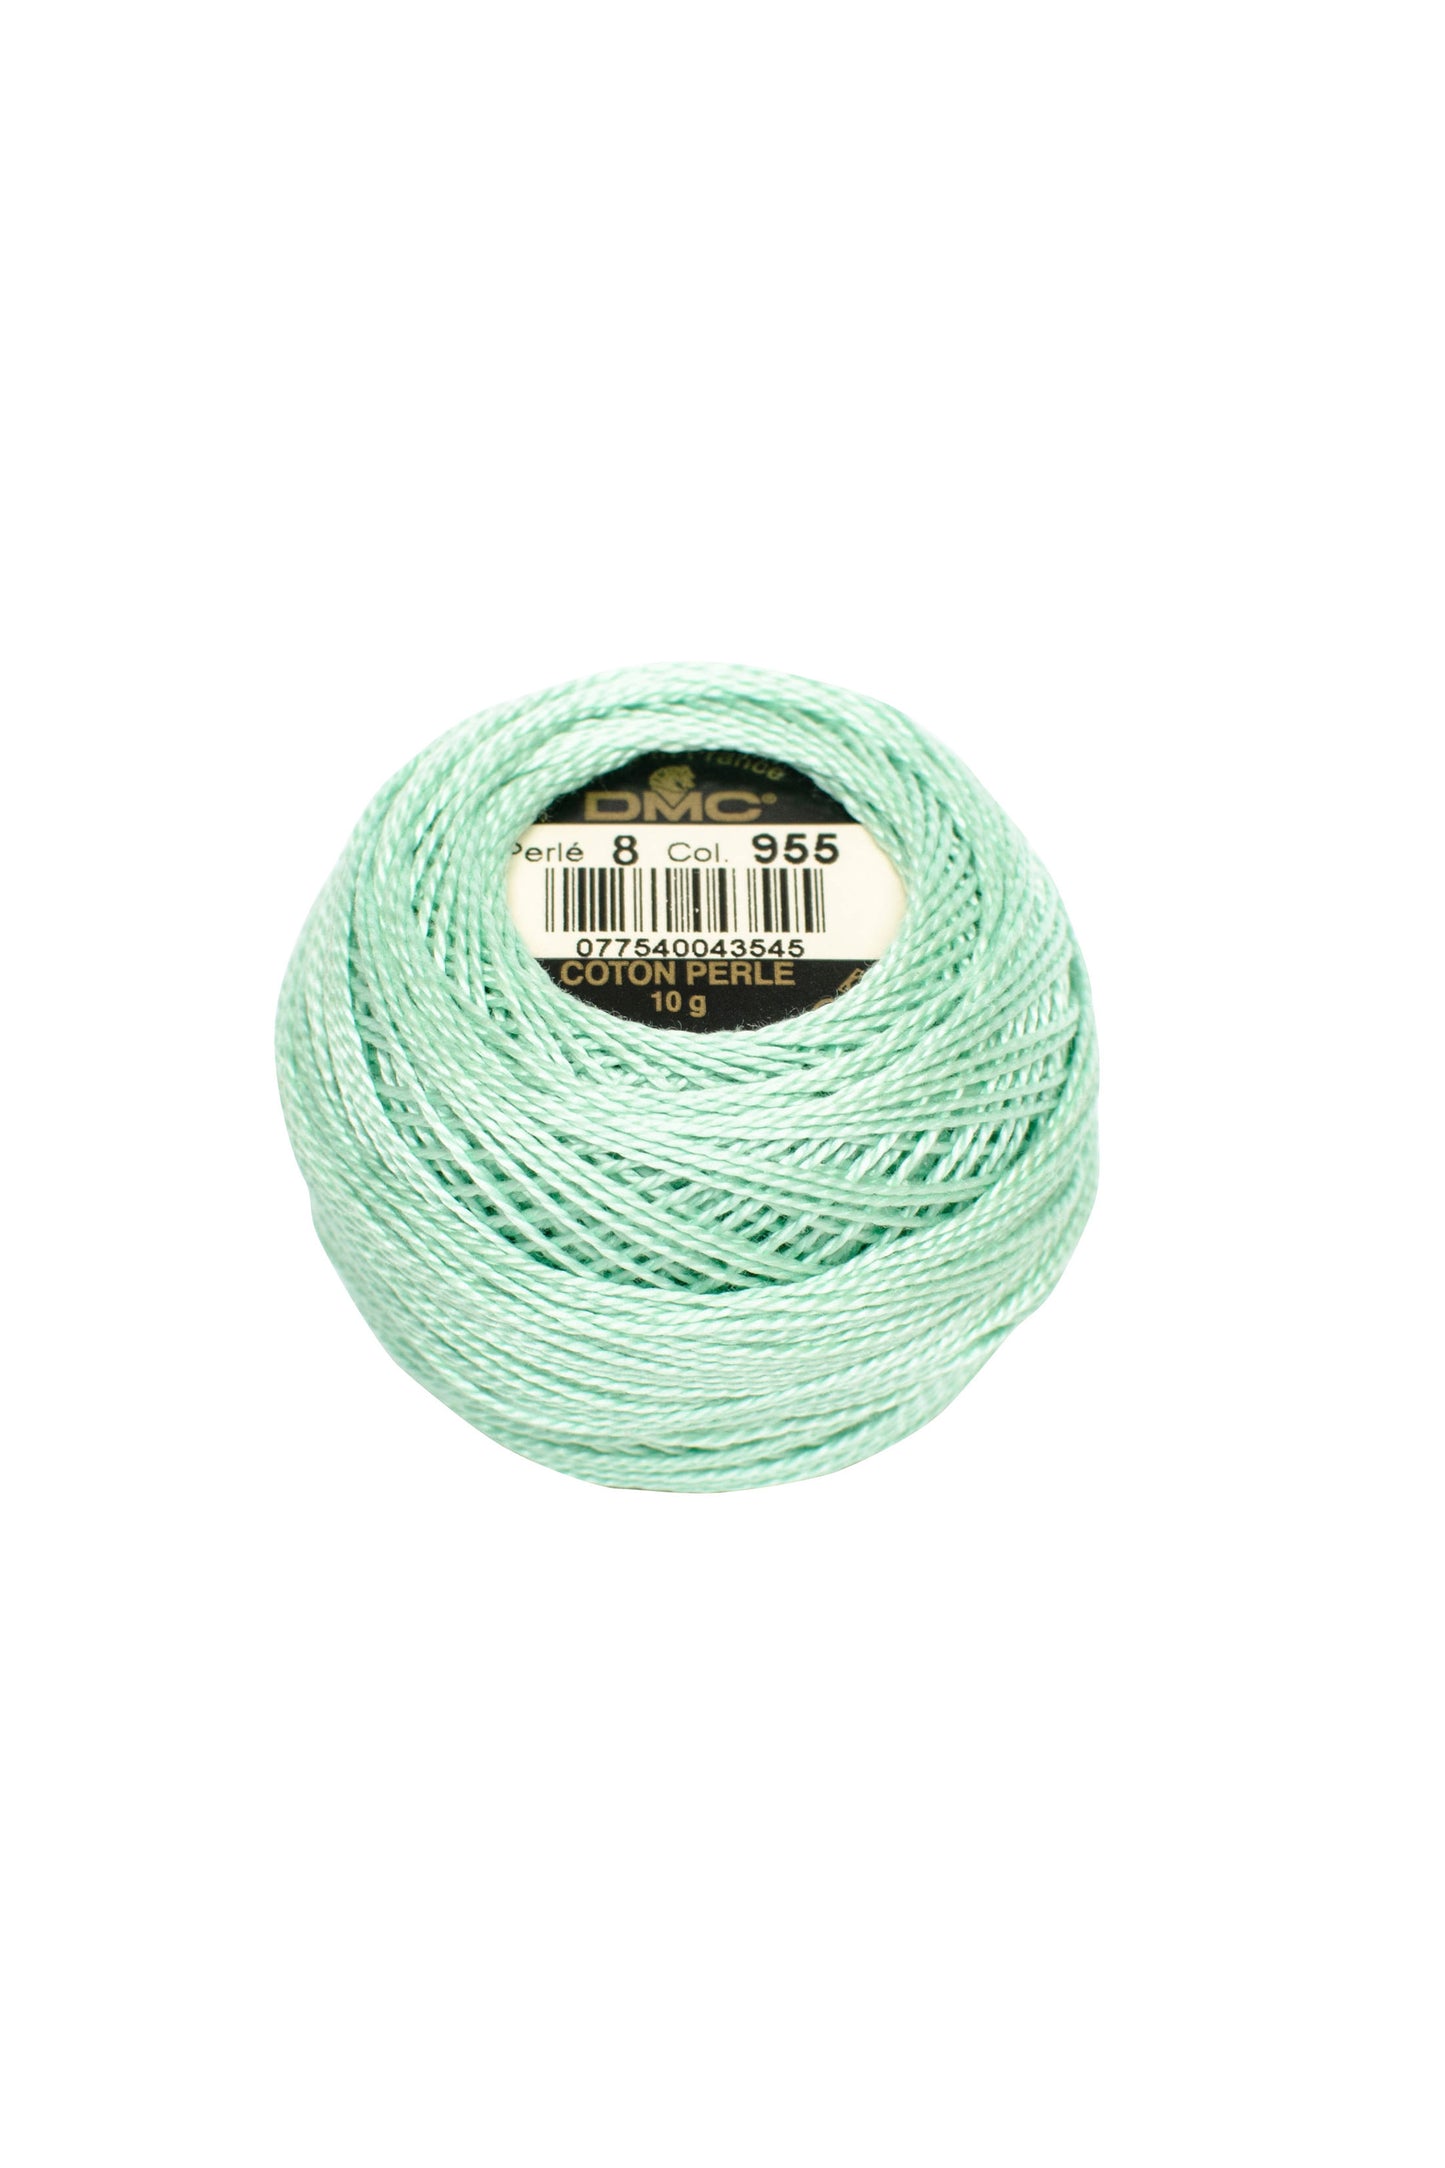 955 Light Nile Green - DMC #8 Perle Cotton Ball